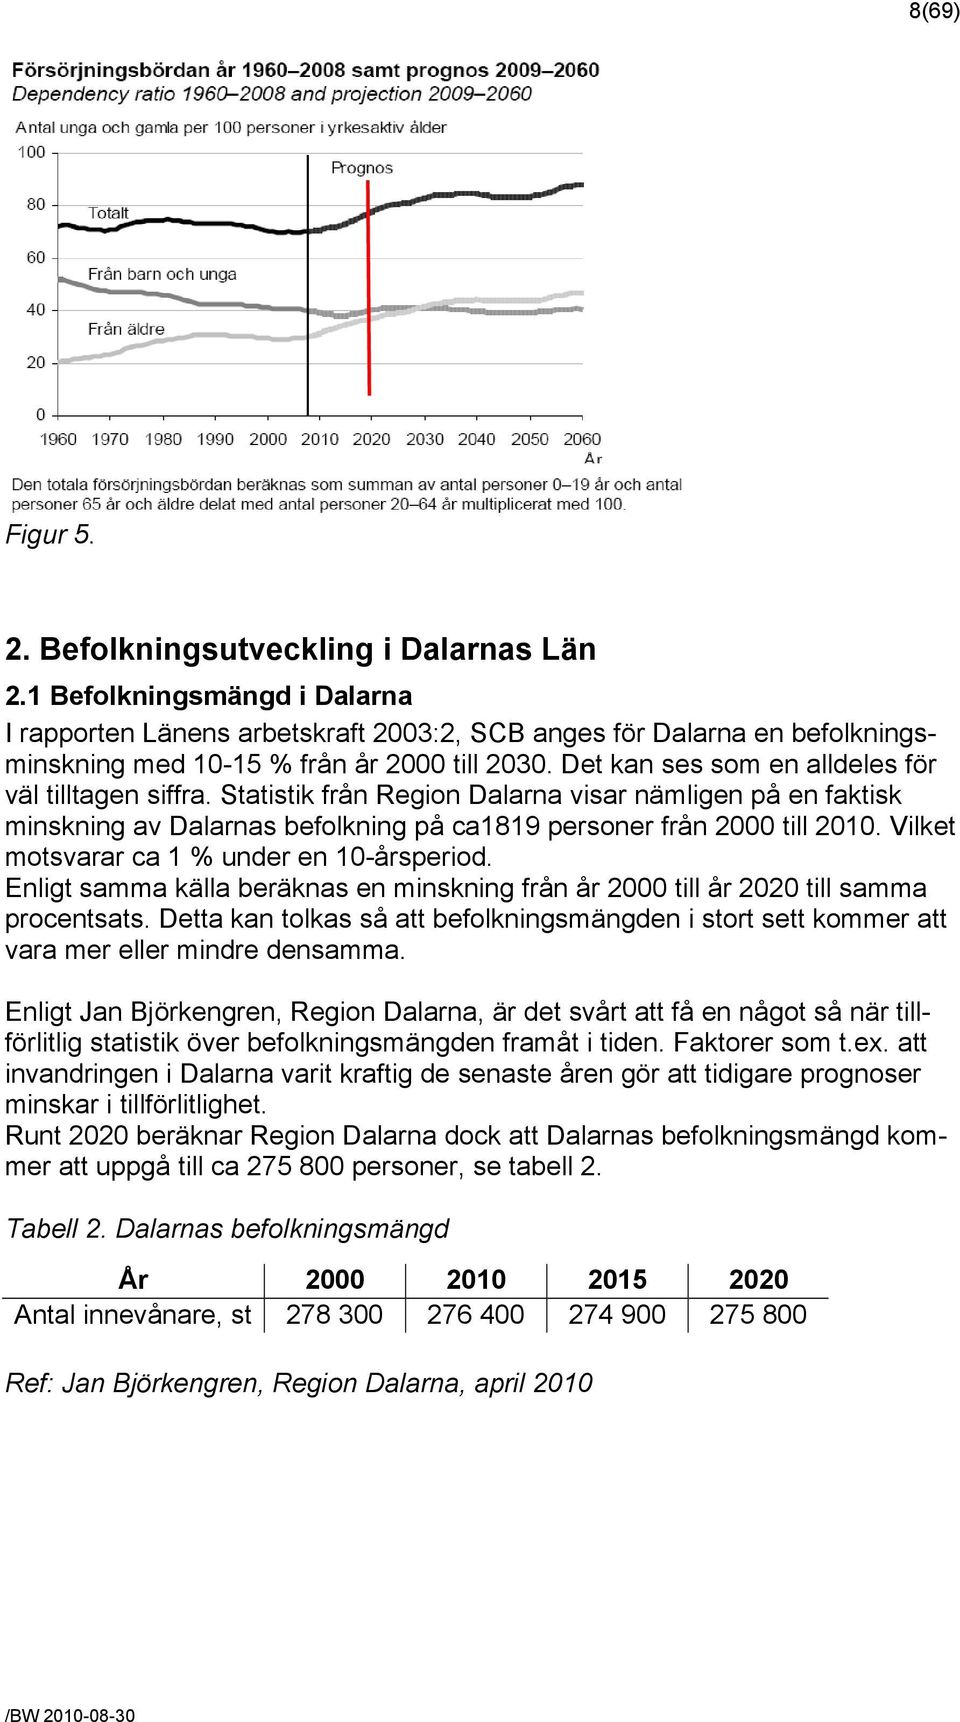 Det kan ses som en alldeles för väl tilltagen siffra. Statistik från Region Dalarna visar nämligen på en faktisk minskning av Dalarnas befolkning på ca1819 personer från 2000 till 2010.